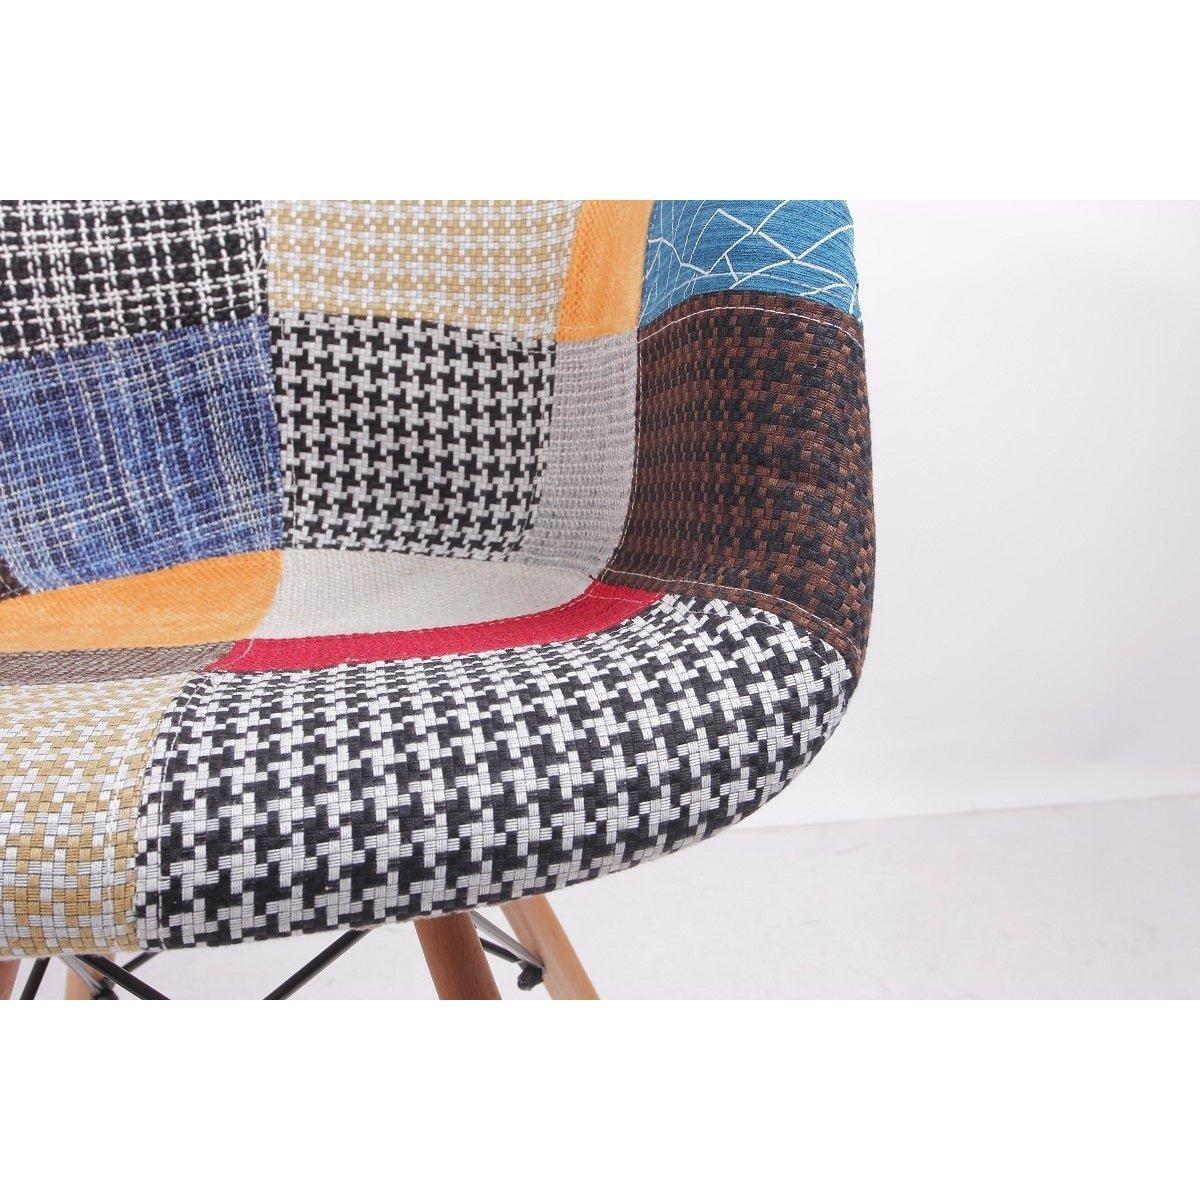 Cadeira Charles Eames Patchwork com Braços - 6